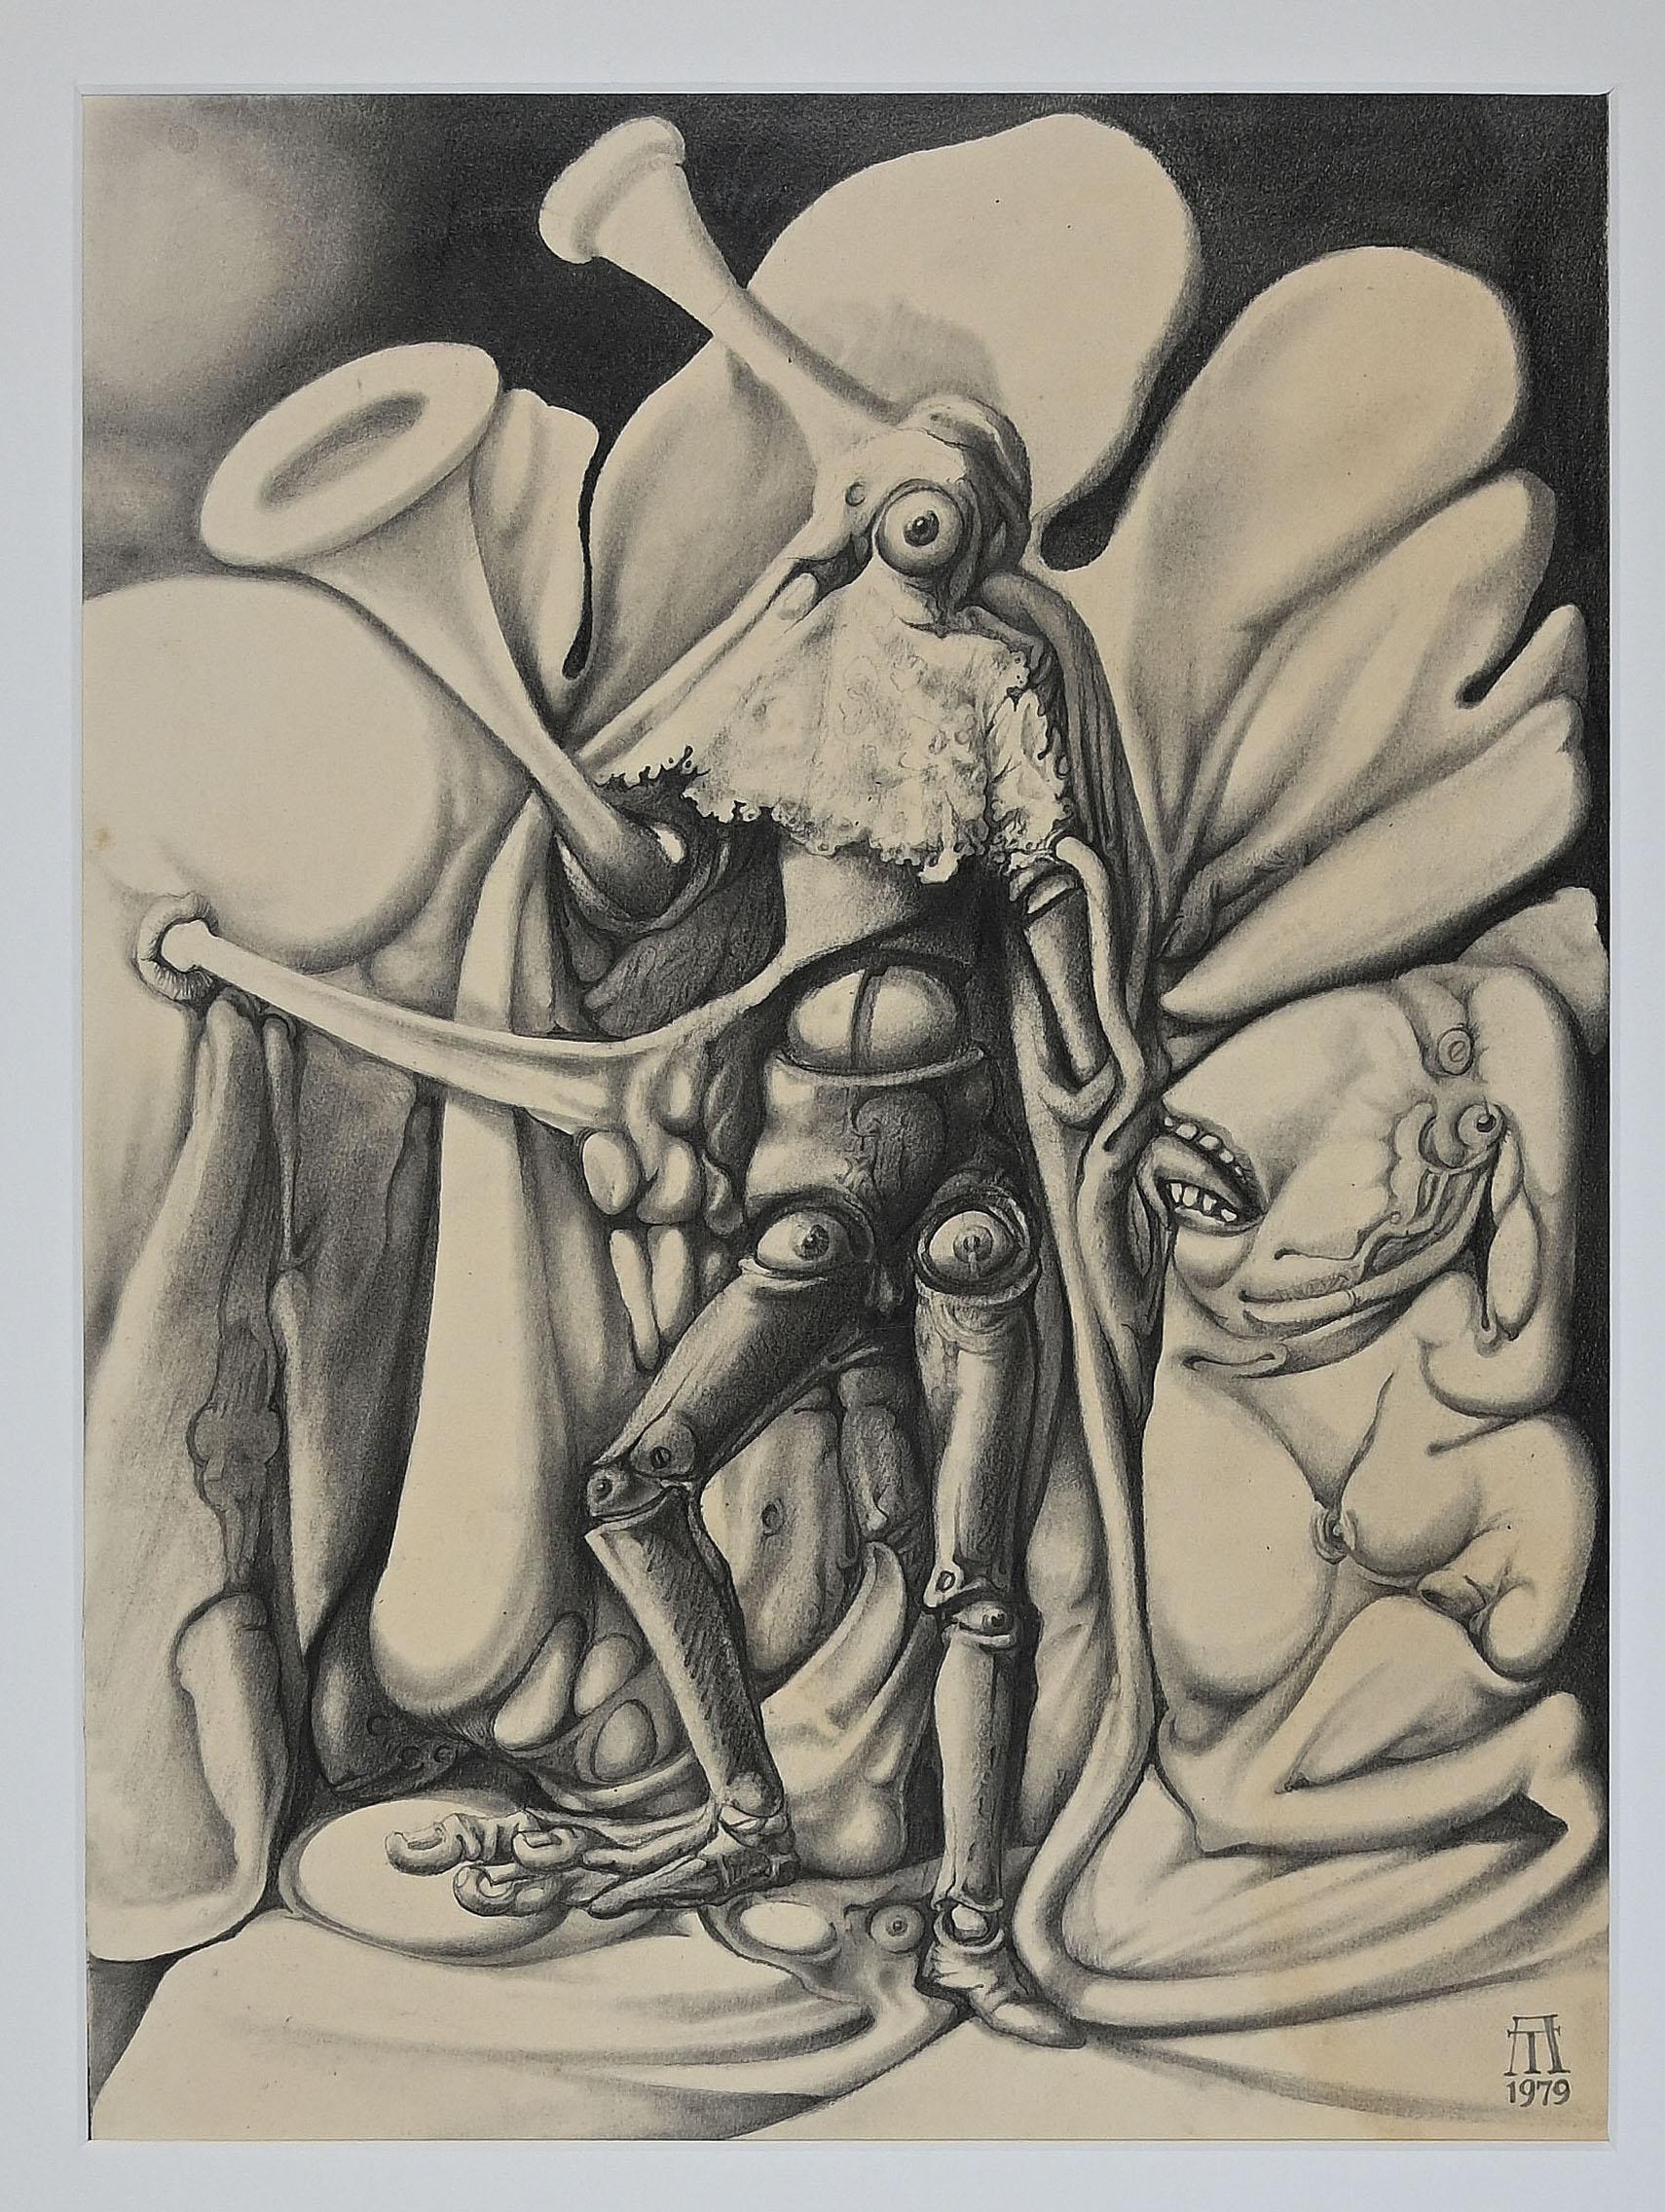 Antonio De Totero Figurative Print - Fantastic figure - Pencil and Charcoal by A. De Totero - 1979